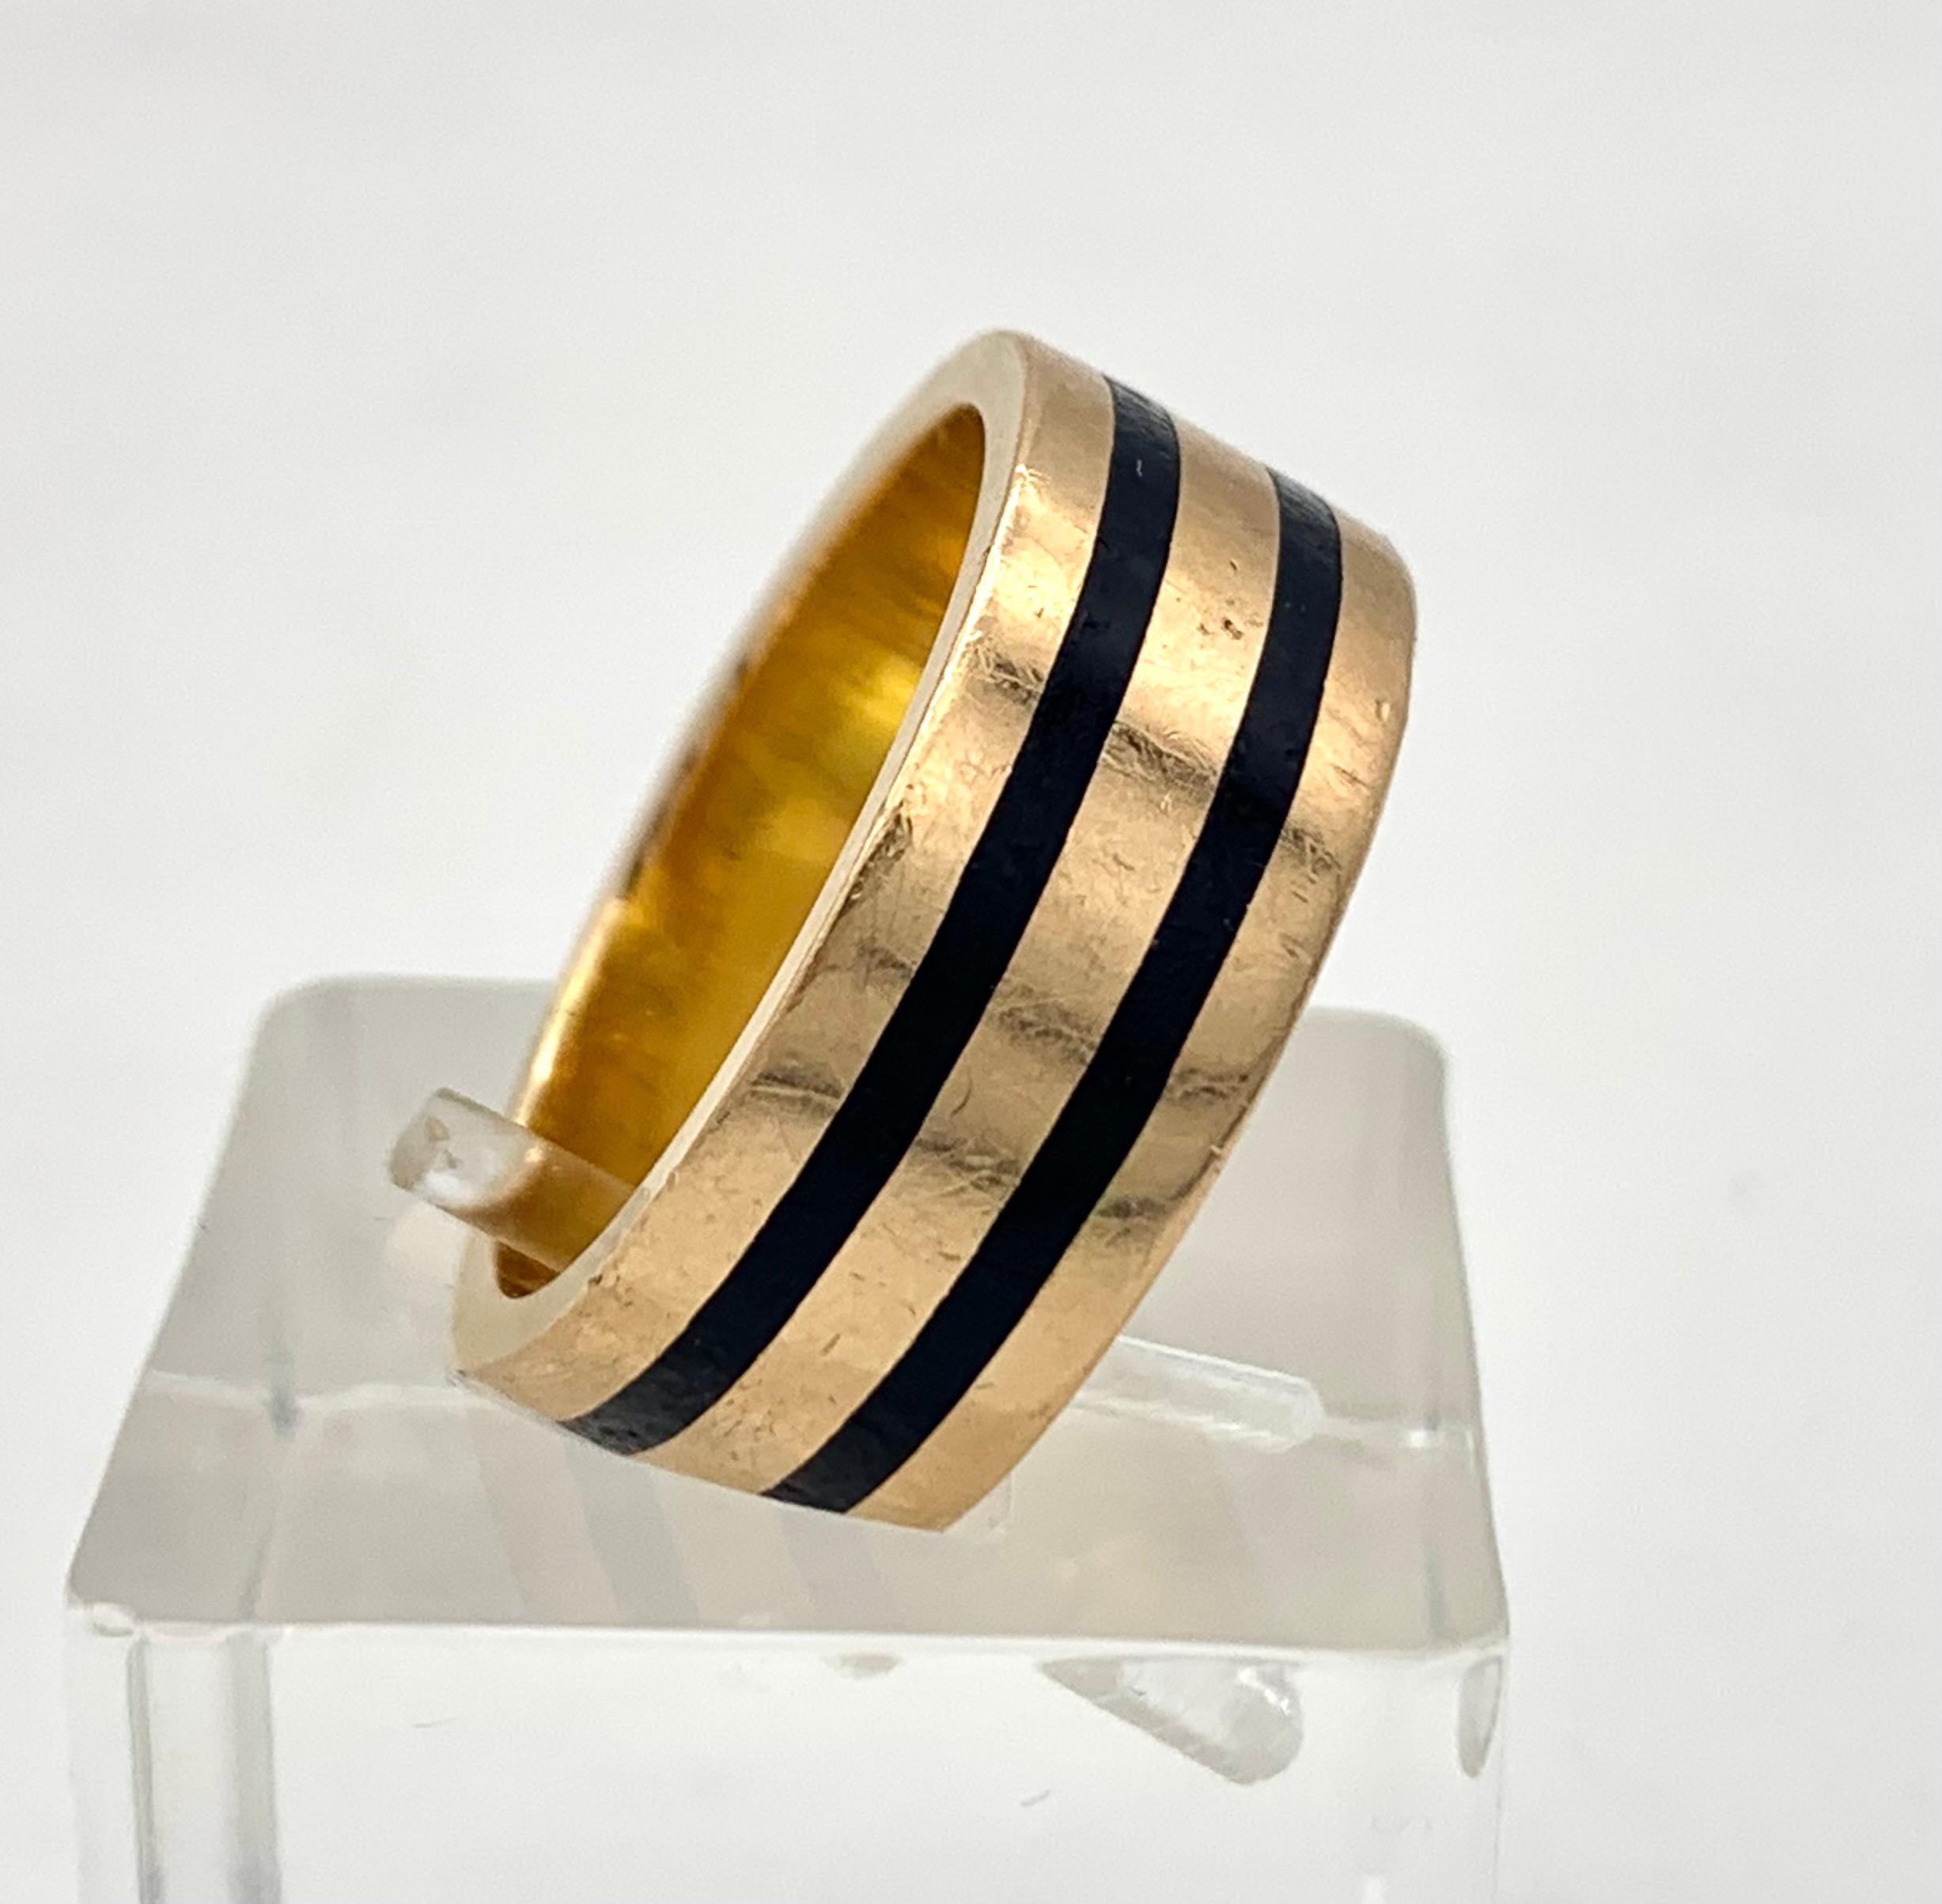 Dieser elegante Ring aus massivem Gold und Emaille wurde um 1880 in Handarbeit aus 15 Karat Gold hergestellt. Mit seinen zwei schmalen emaillierten Linien ist er von modernistischer Eleganz. Der Ring trägt auf der Innenseite eine Inschrift:
